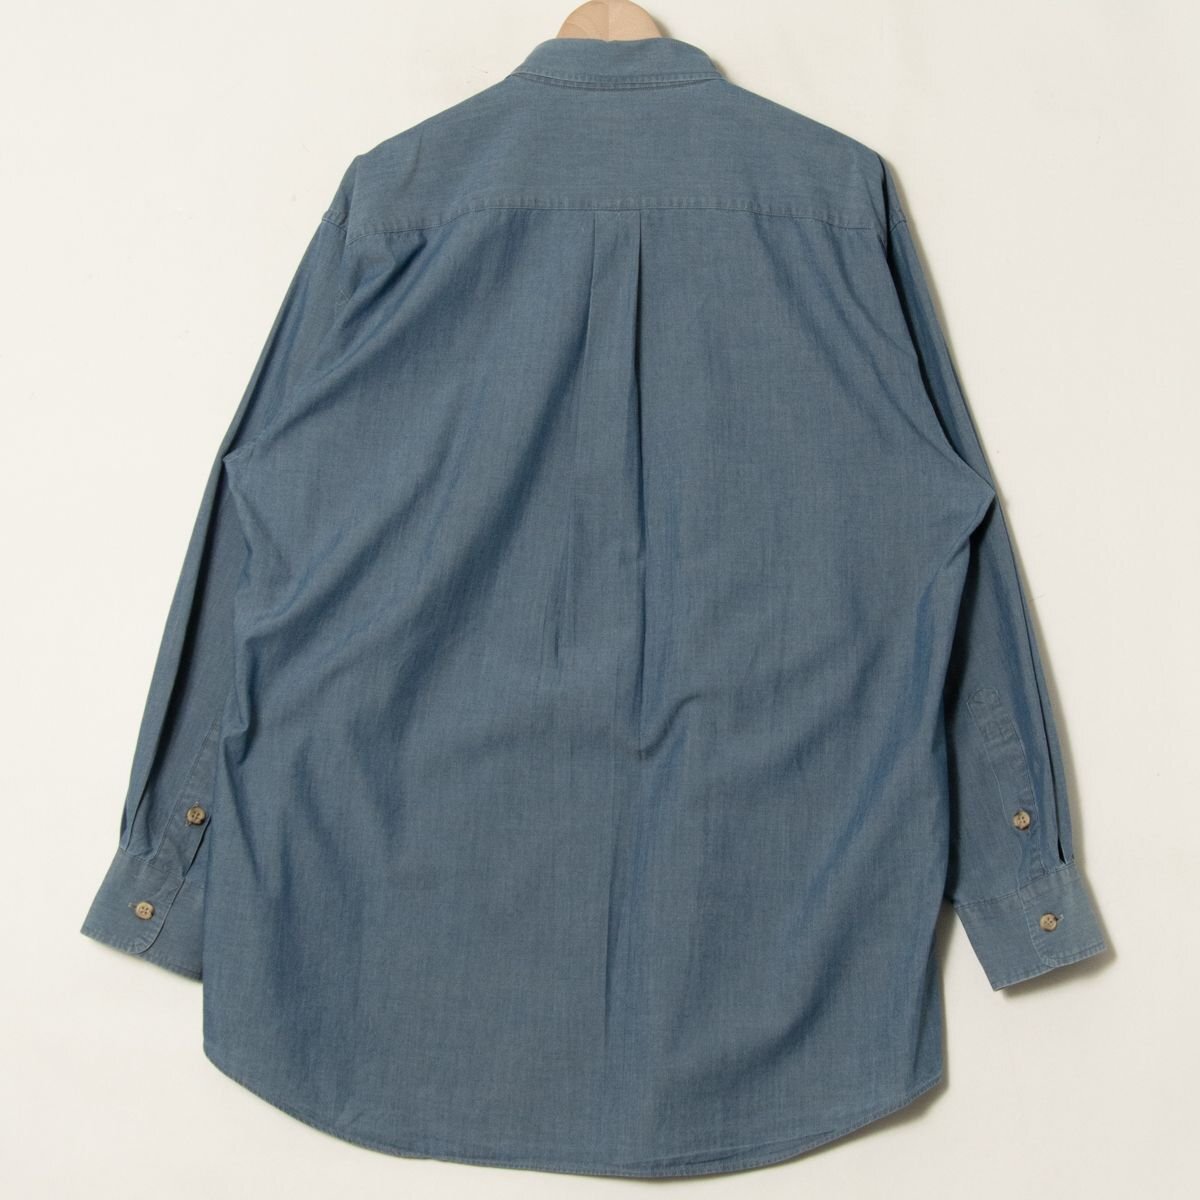  почтовая доставка 0 сделано в Японии BURBERRY\'S Burberry размер 2L длинный рукав кнопка down рубашка хлопок 100% мужской весна лето tops casual простой 